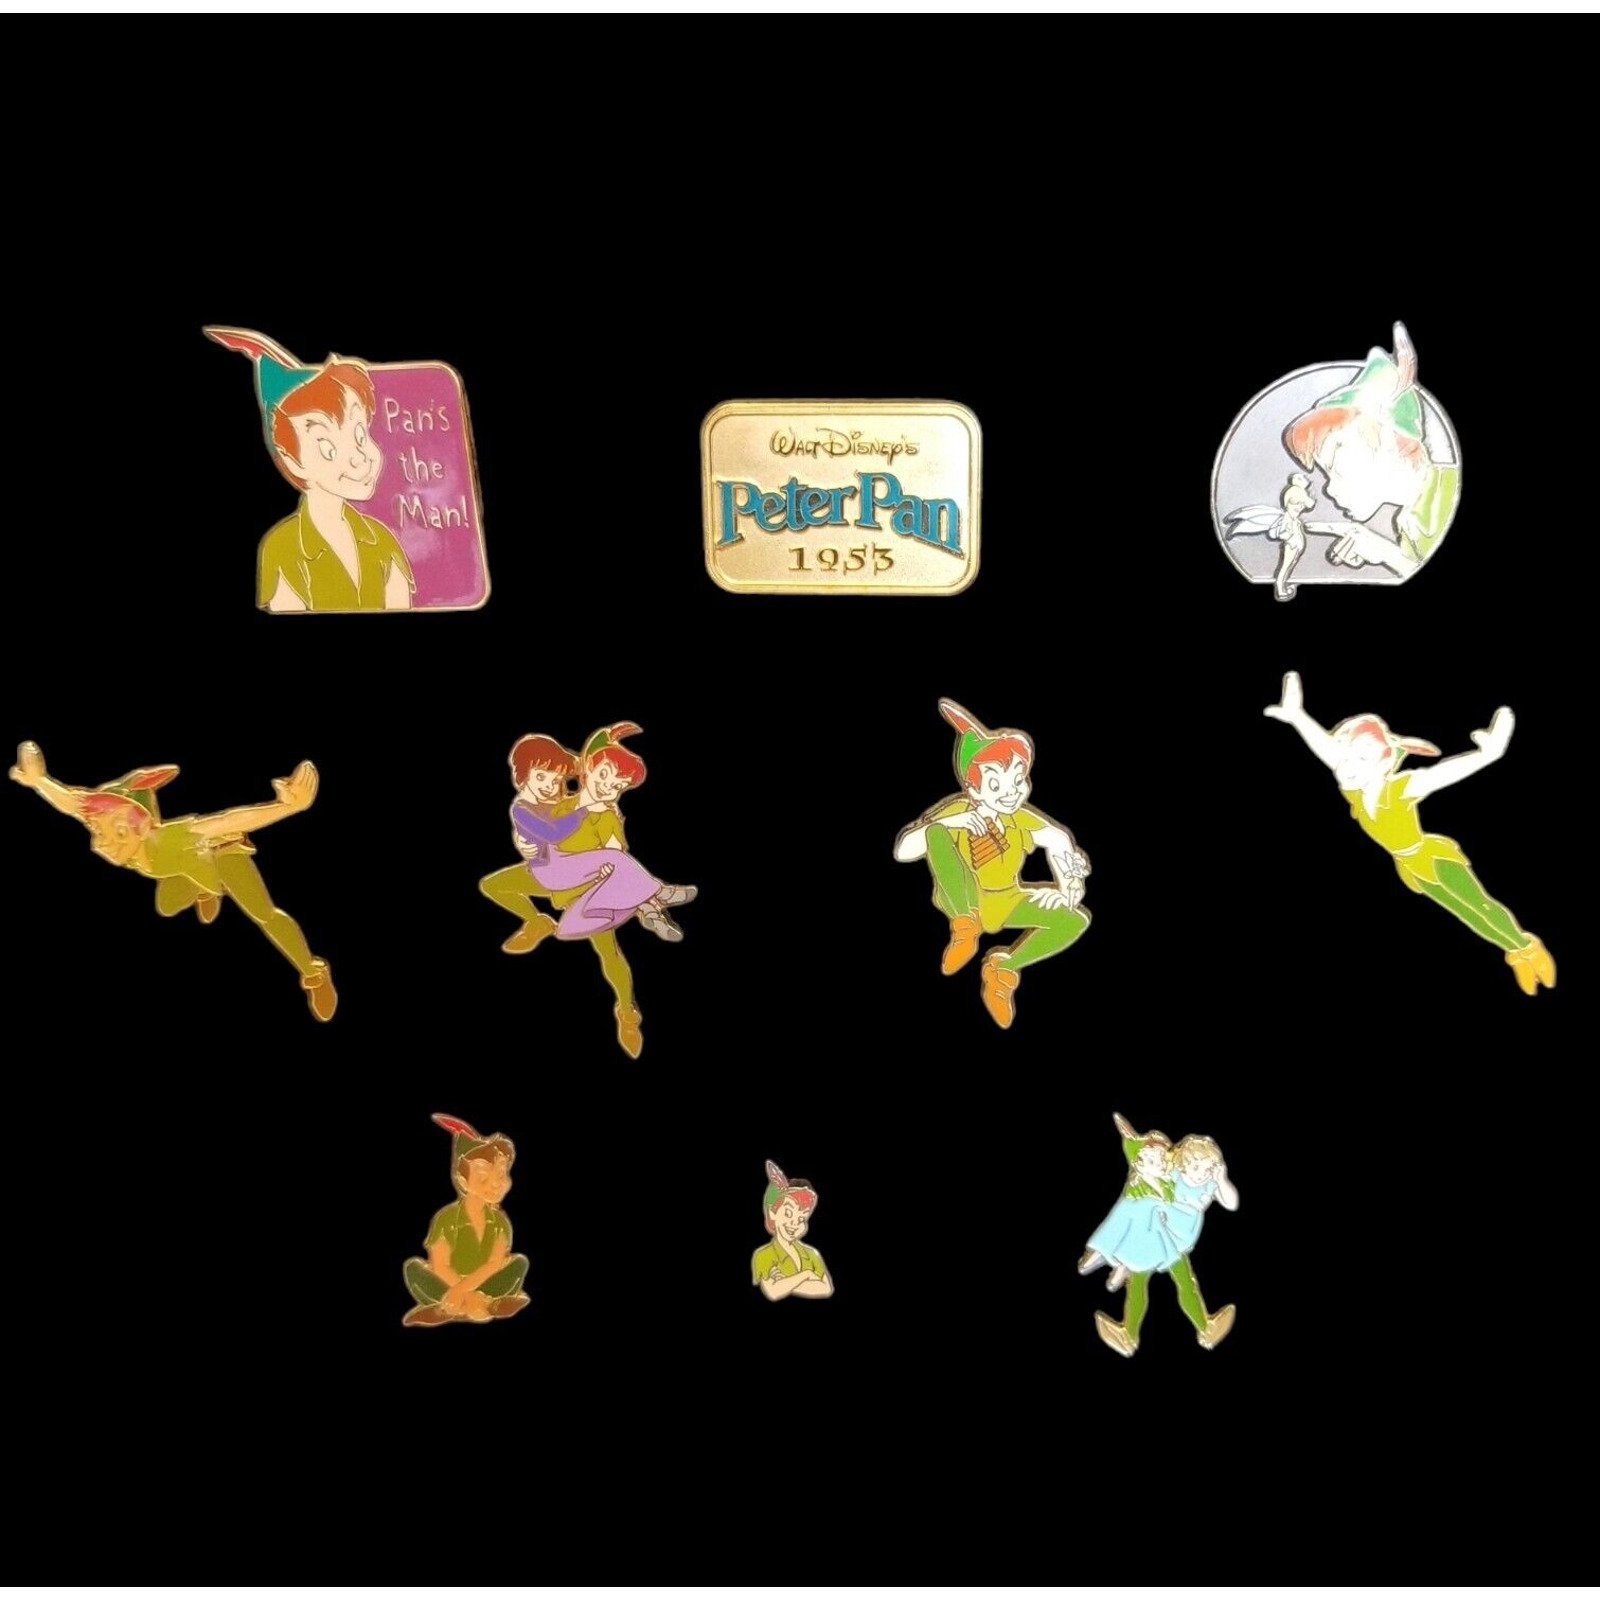 Peter Pan Disney Pin Lot of 10 - Vintage Trading Pins